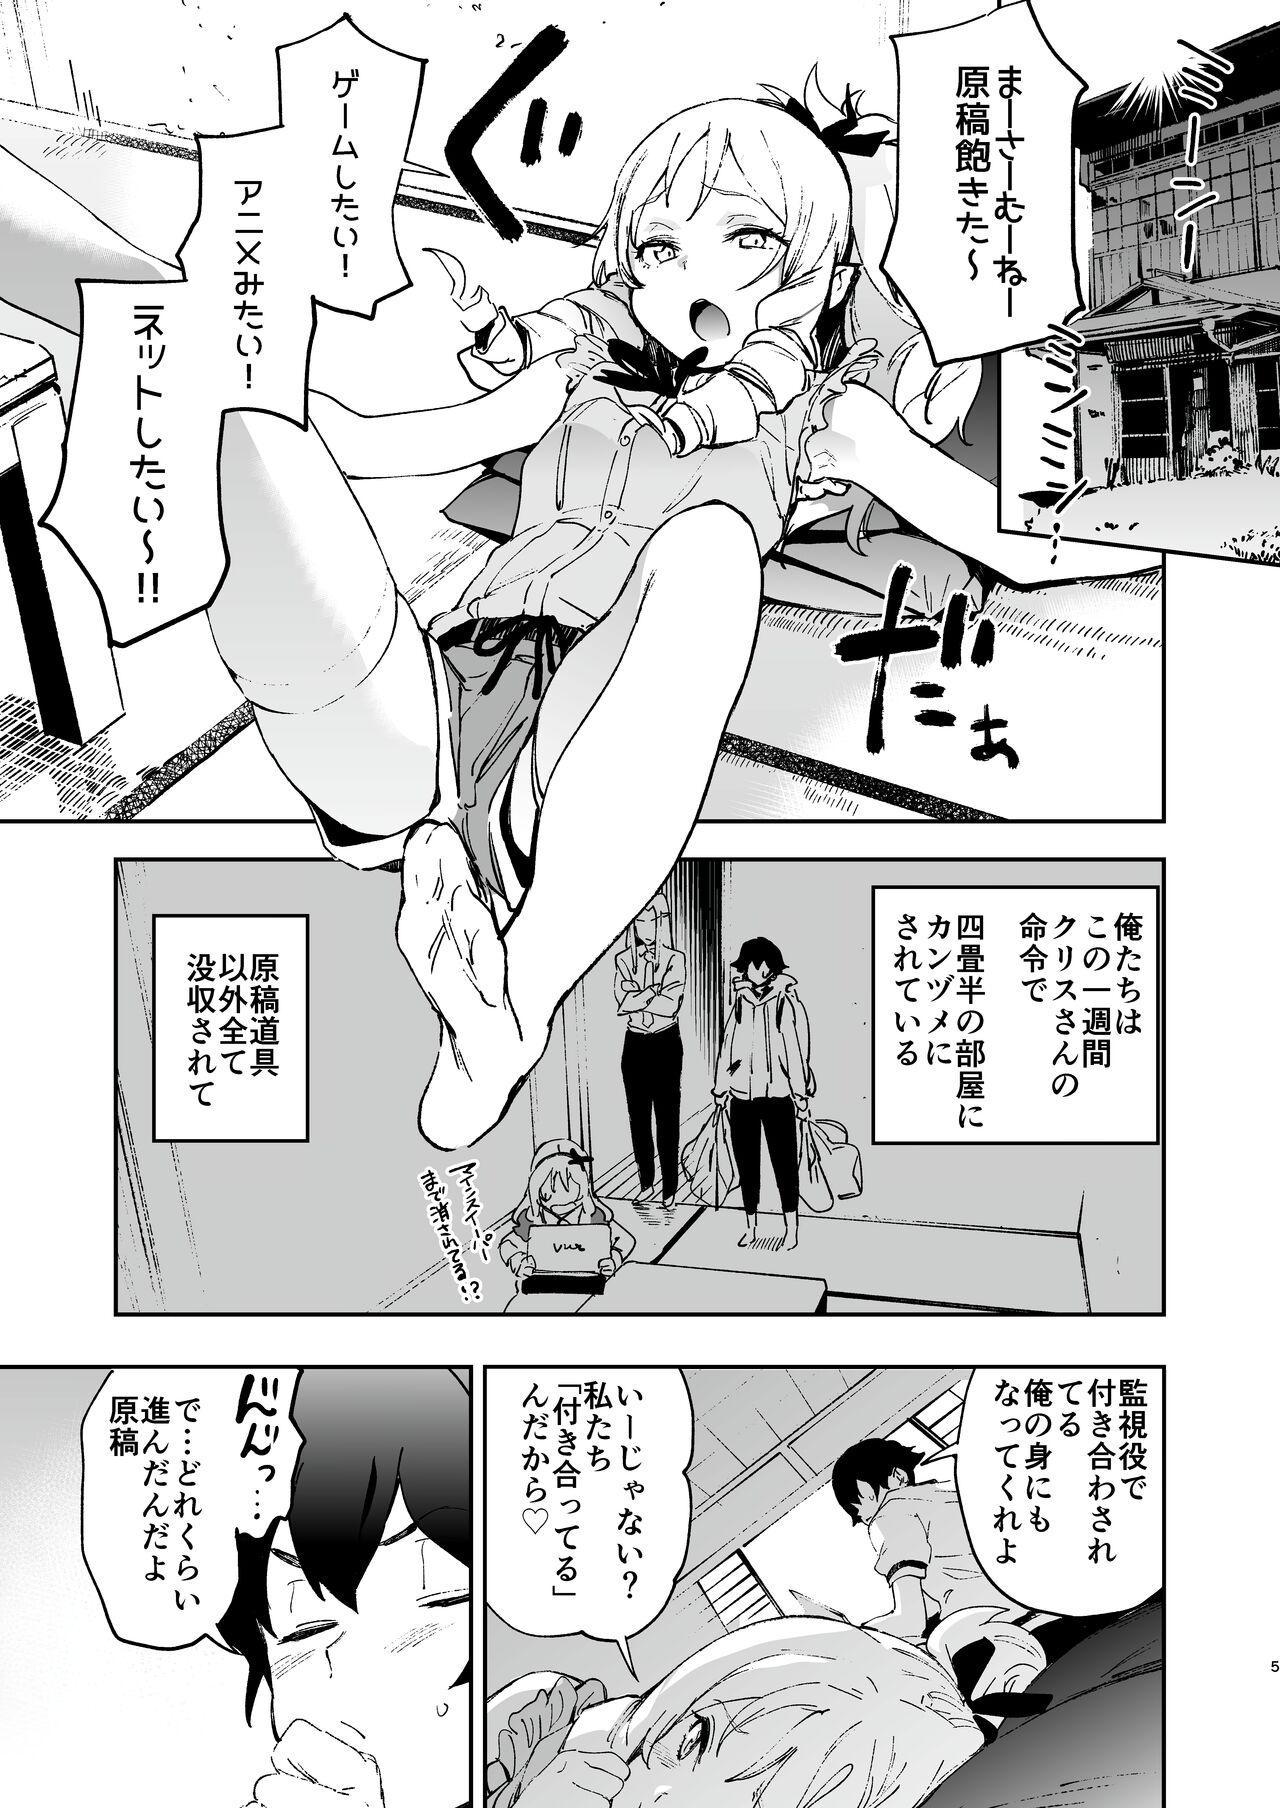 Pasivo Yamada Elf-sensei no Yaruki SEX Fire - Eromanga sensei Culazo - Page 4